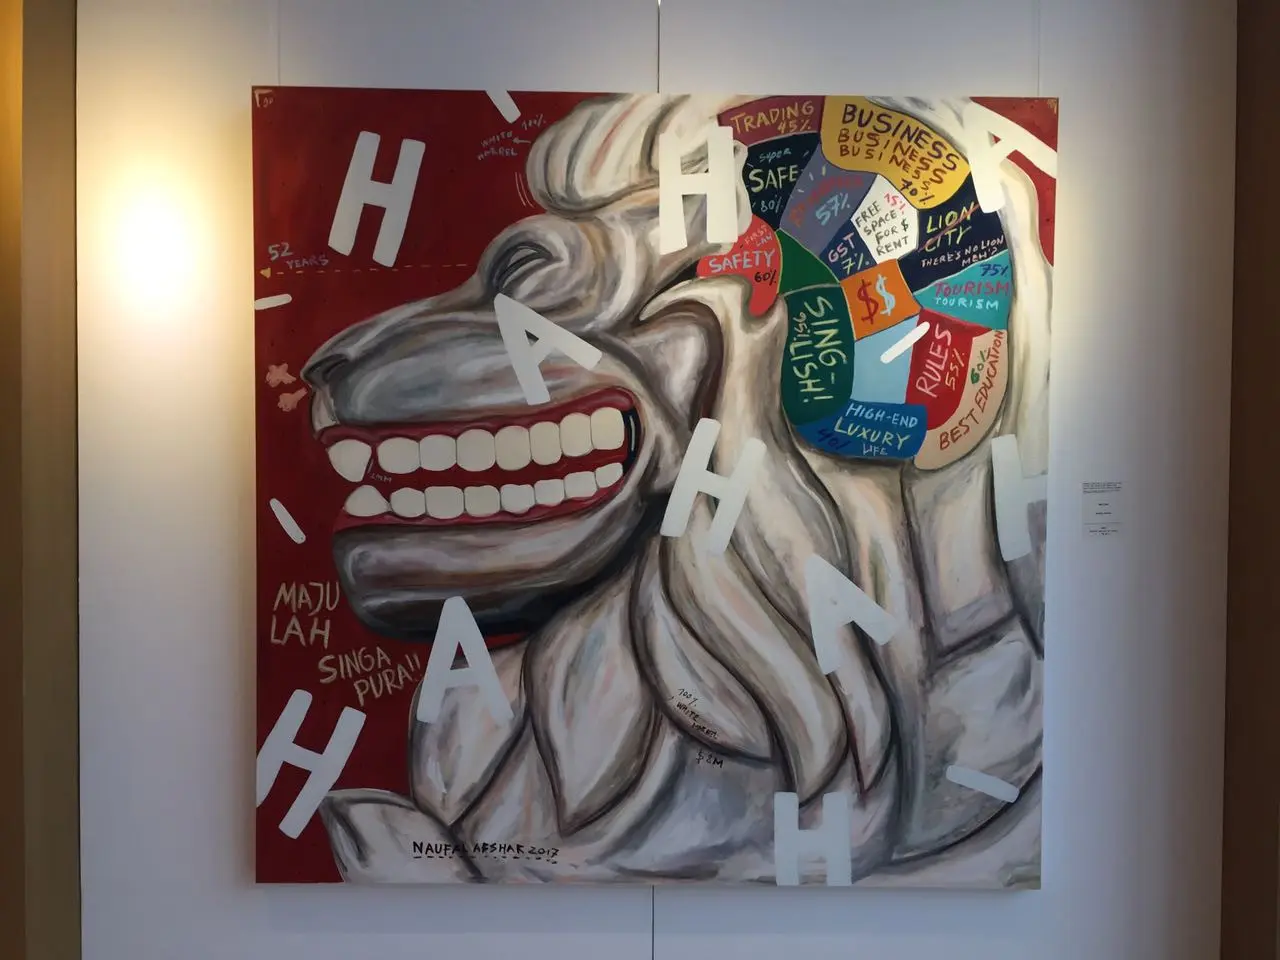 Lukisan berjudul 'Merlion' karya Naufal Abshar yang ditampilkan dalam pameran seni lukis (Liputan6.com/Teddy Tri Setio Berty)